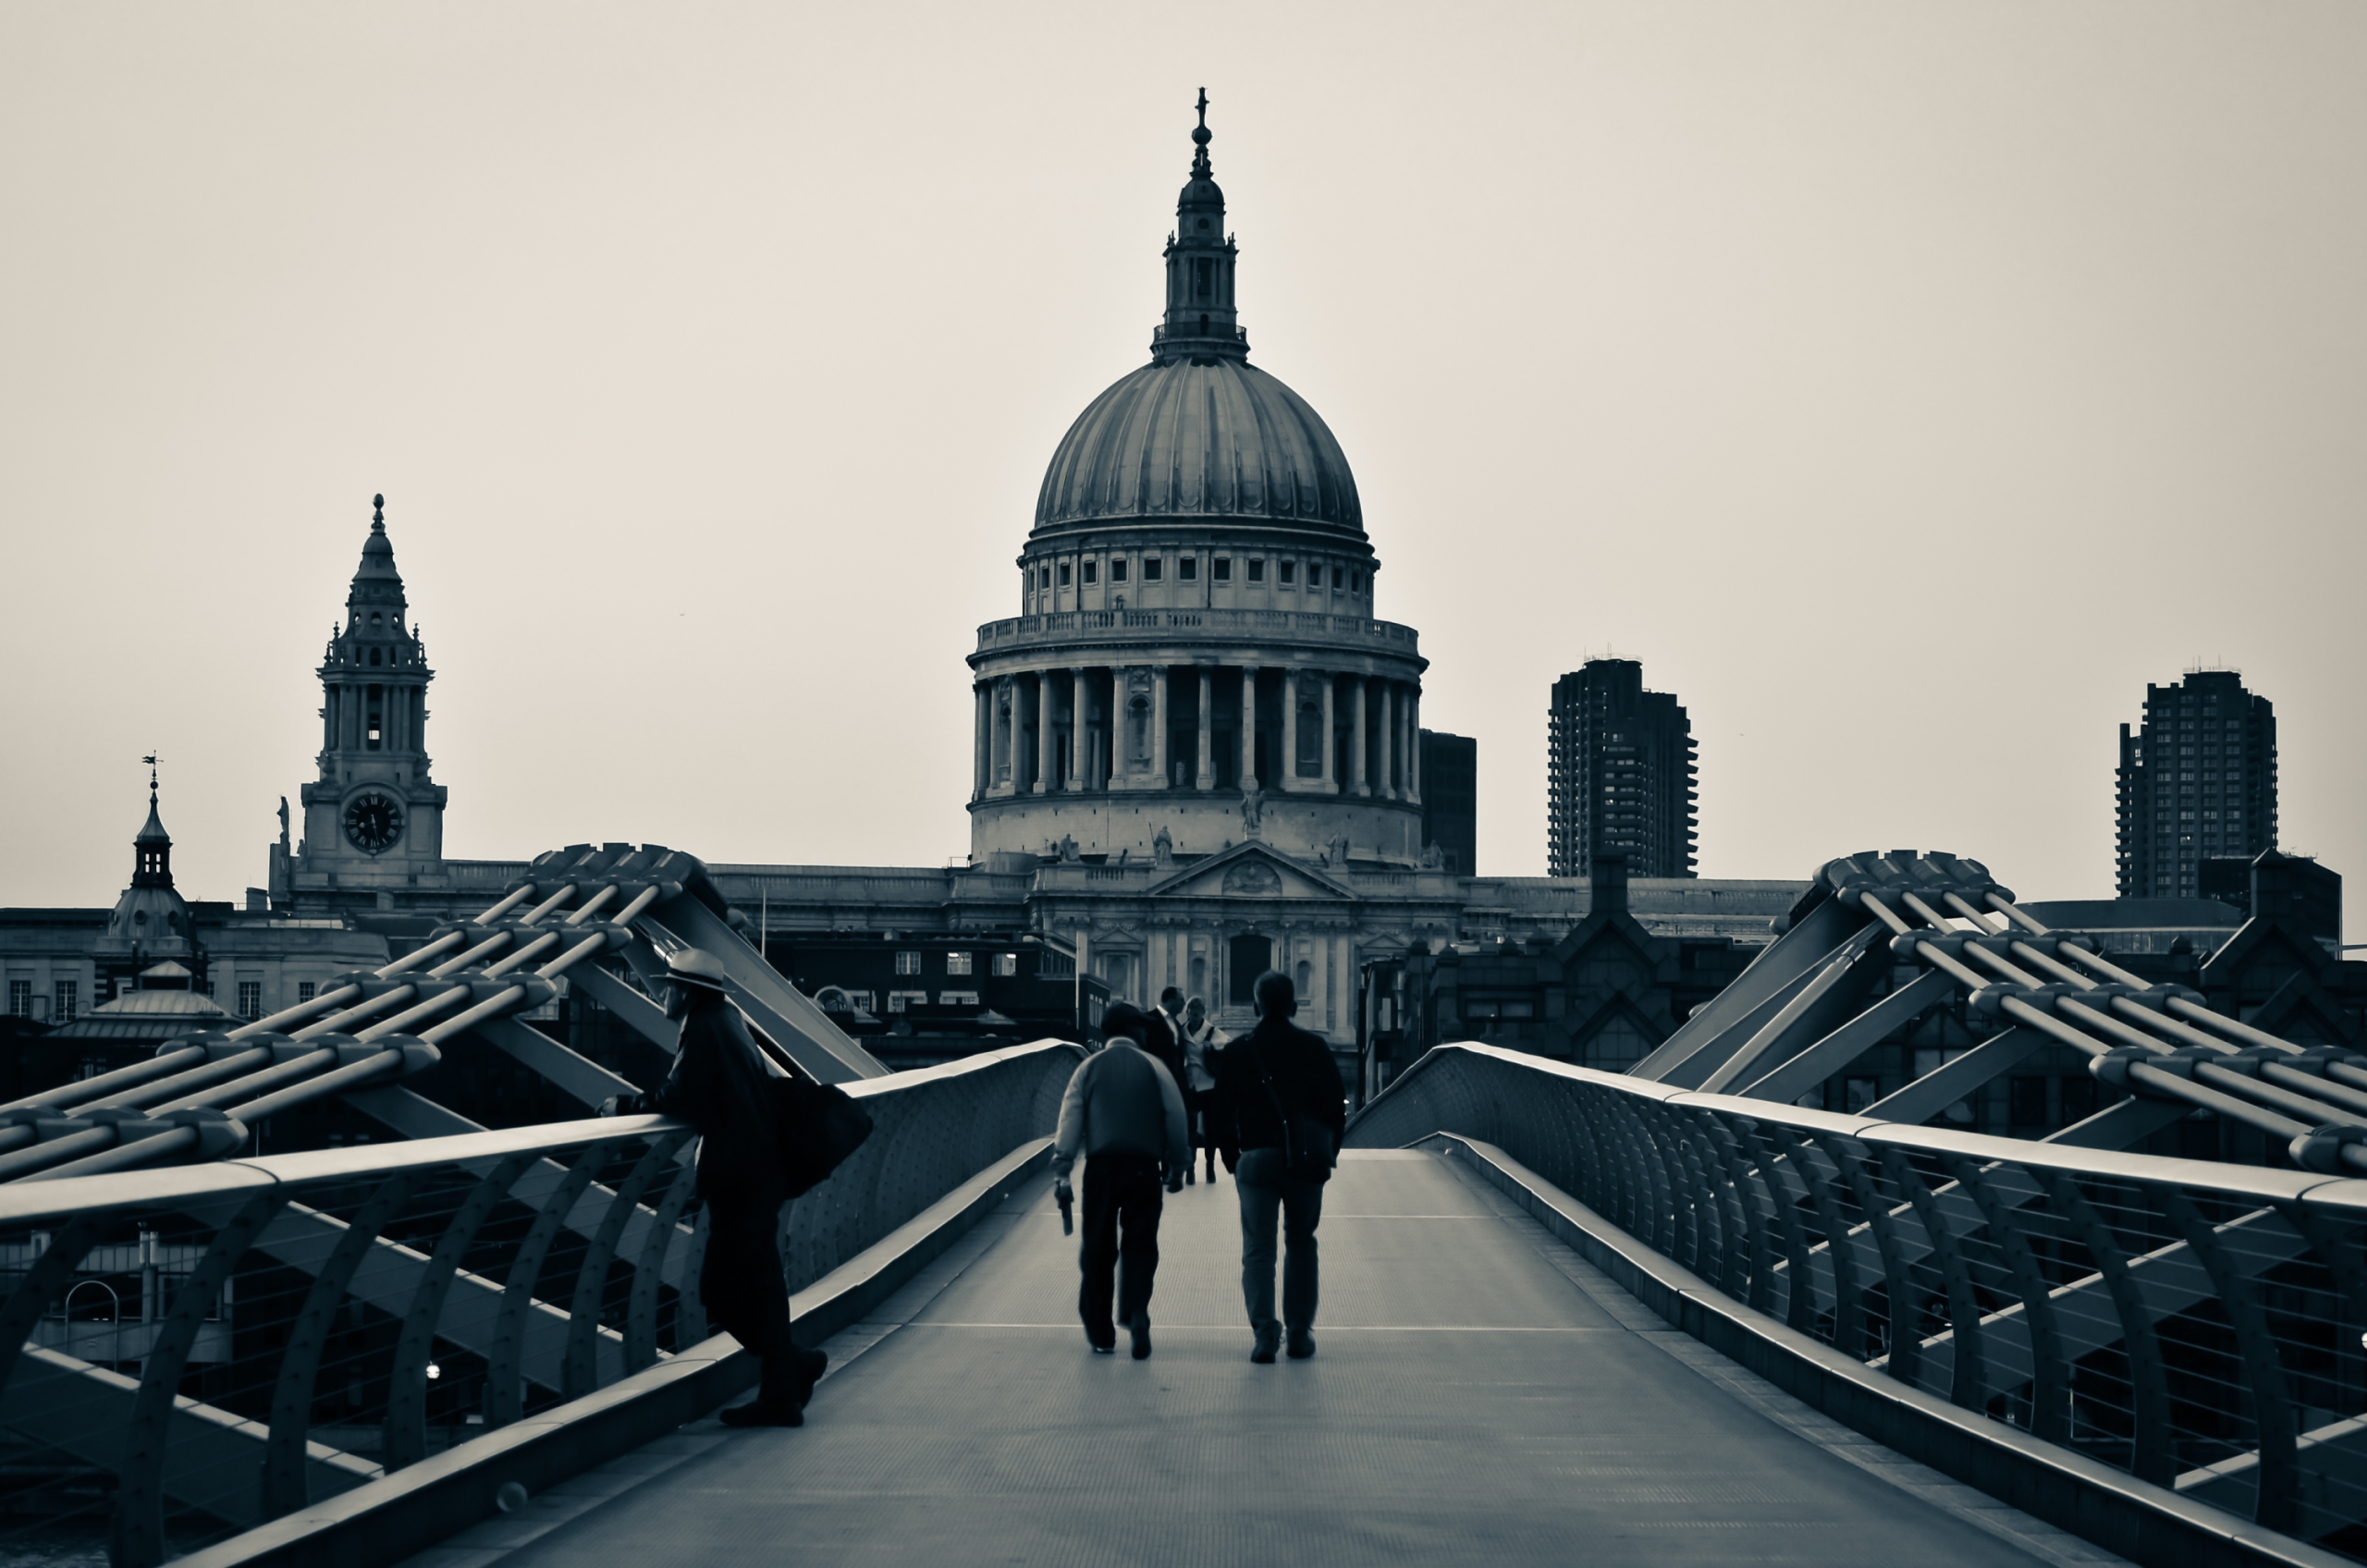 bridges, man made, millennium bridge, black & white, bridge, building, london, st paul's cathedral